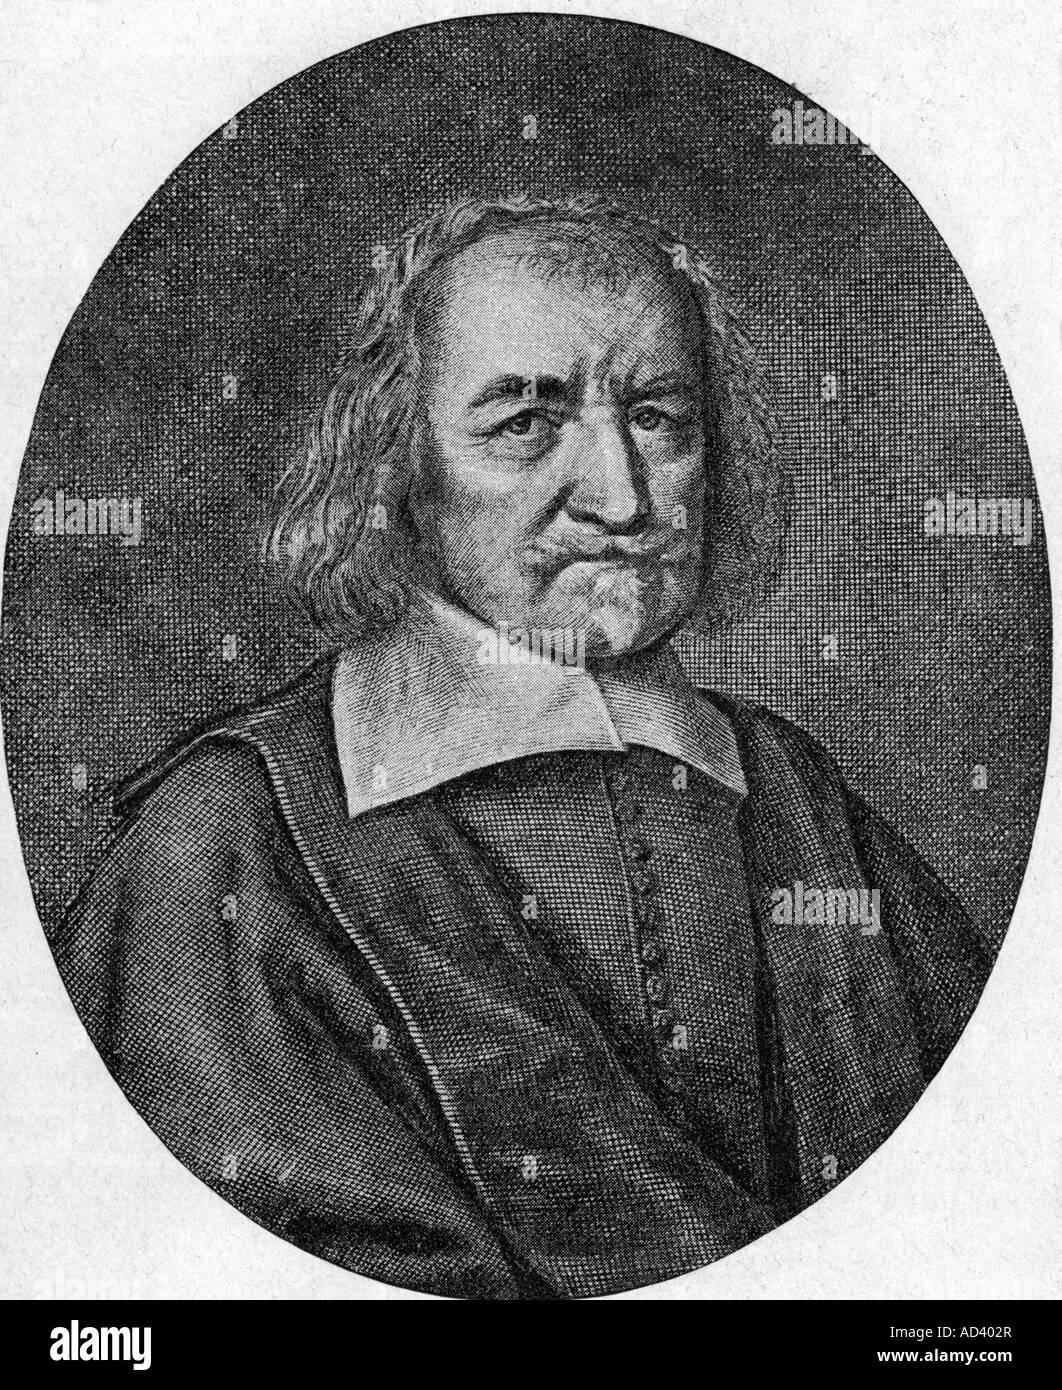 Hobbes, Thomas, 5.4.1588 - 4.12.1679, philosophe britannique, portrait, gravure originale après gravure sur cuivre par William Faithorne, 19e siècle, l'artiste n'a pas d'auteur pour être effacé Banque D'Images